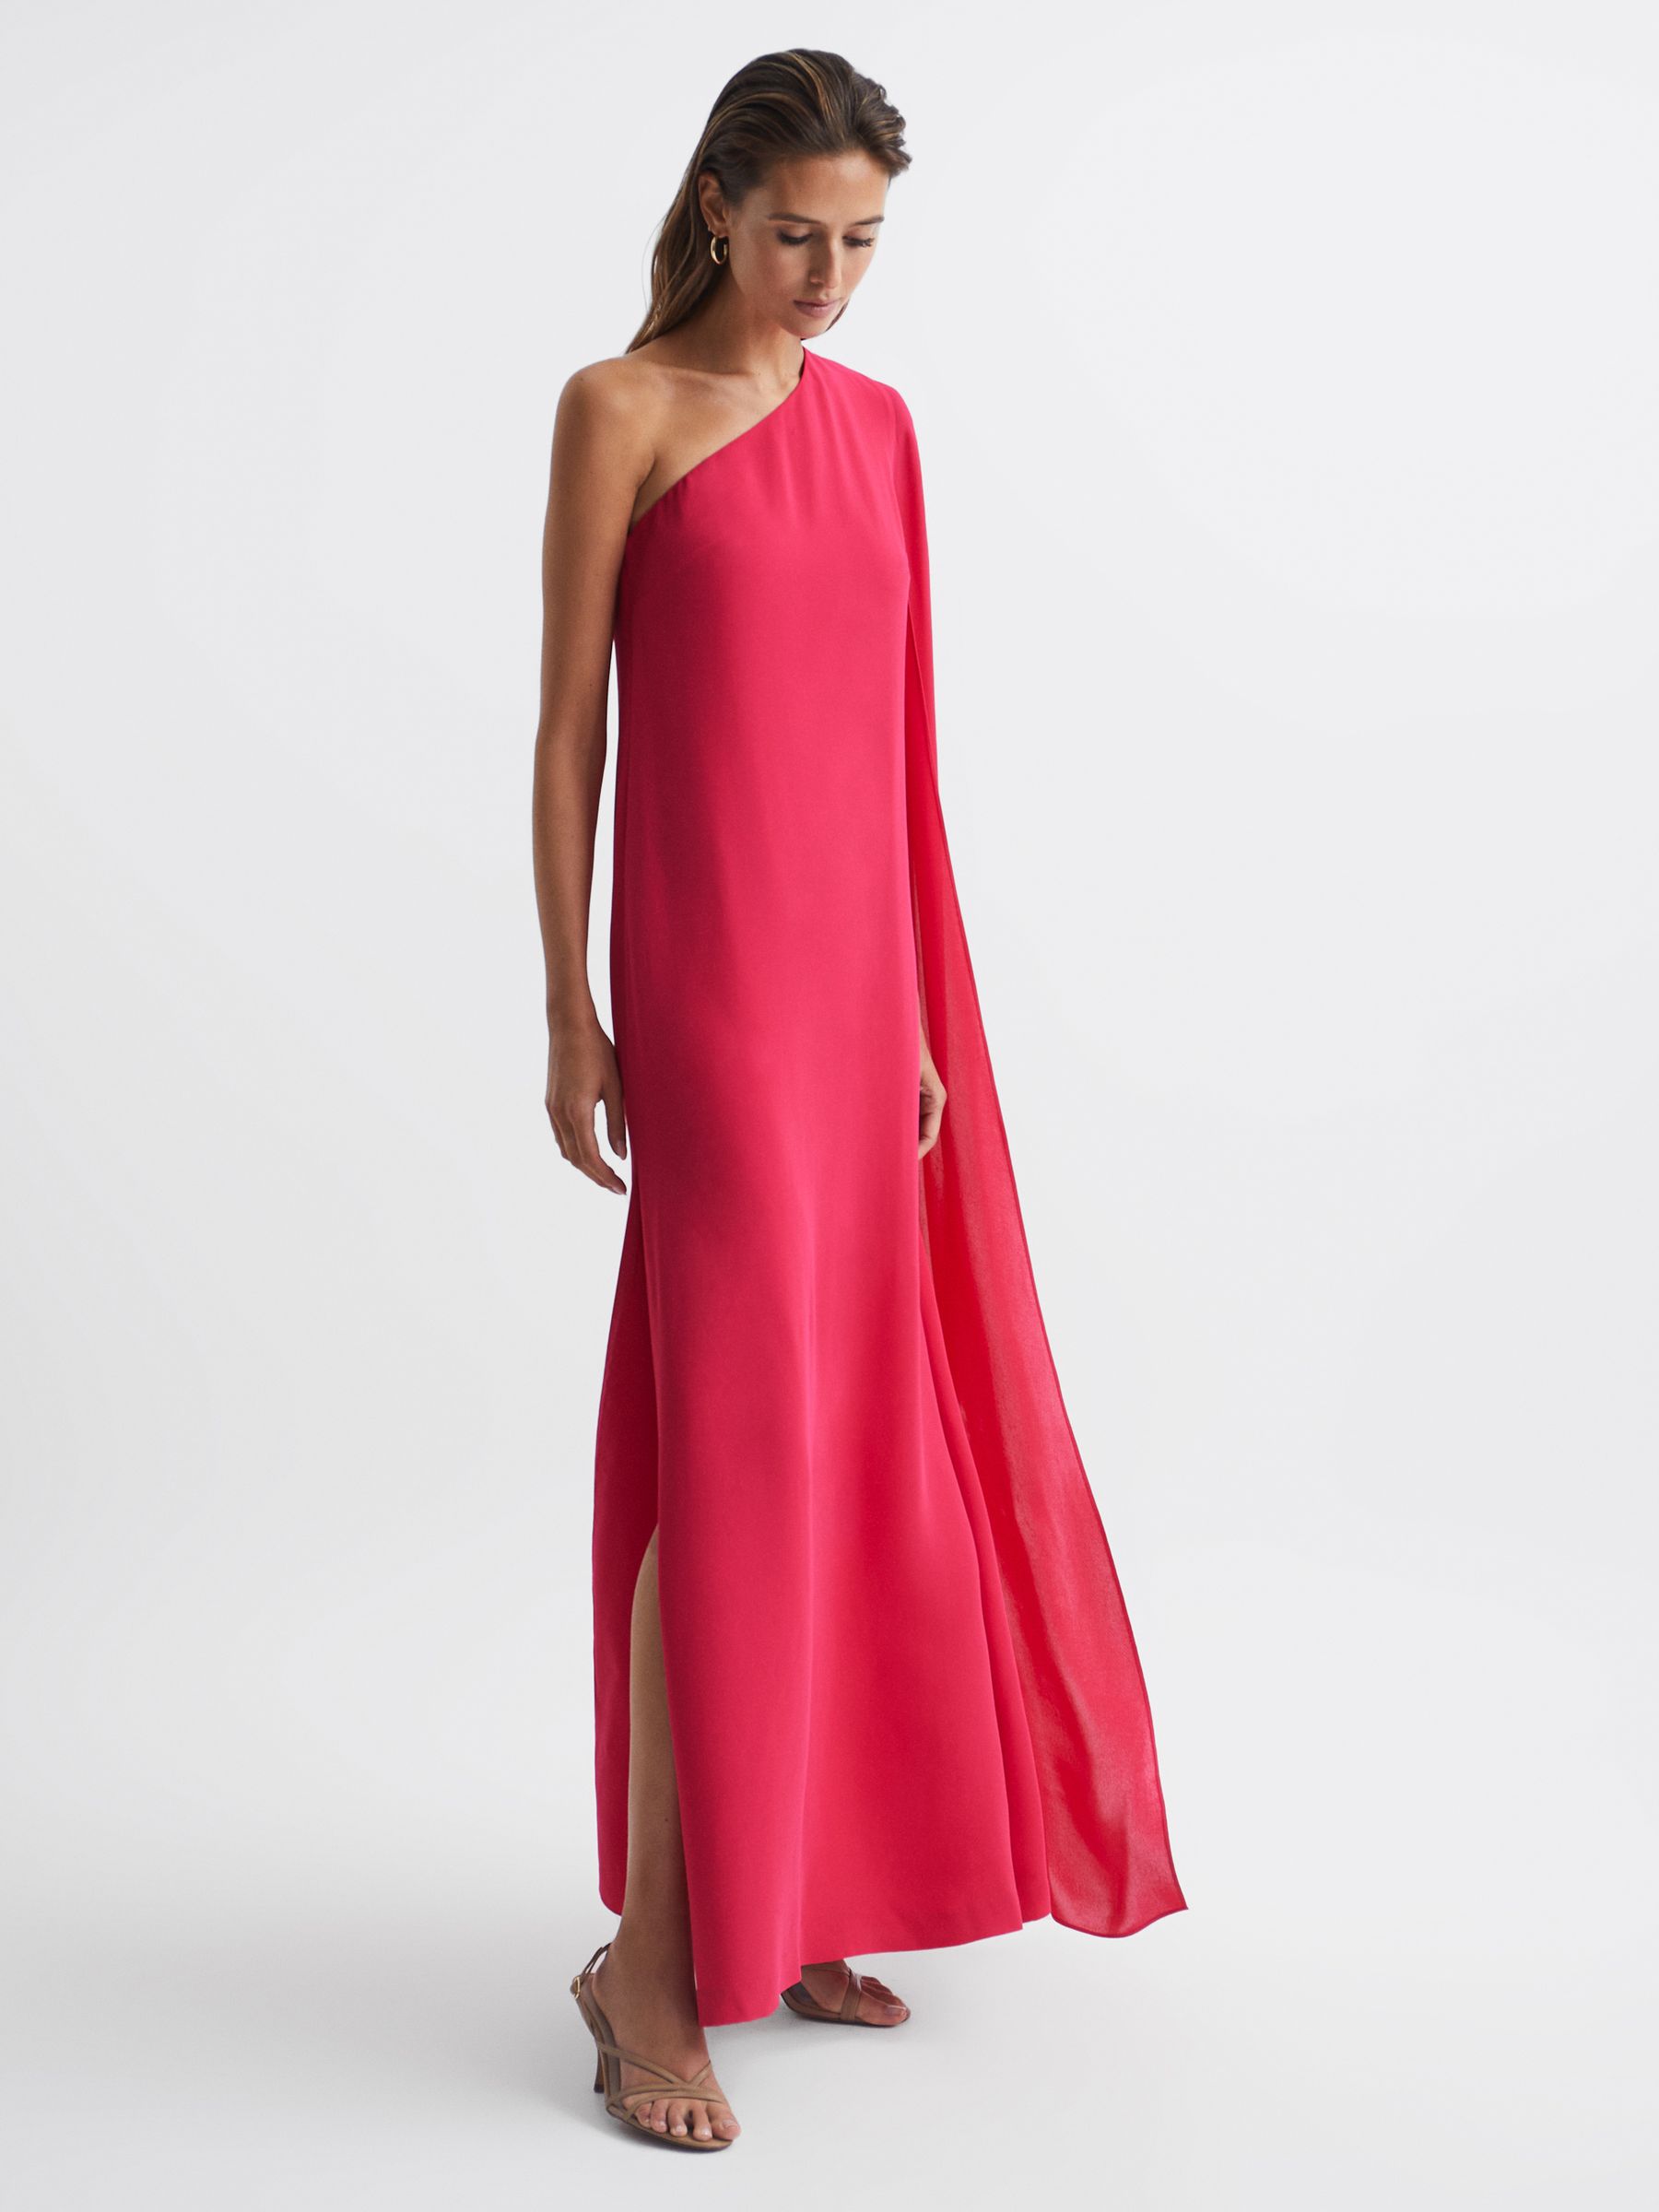 Reiss Nina Cape One Shoulder Maxi Dress | REISS Netherlands